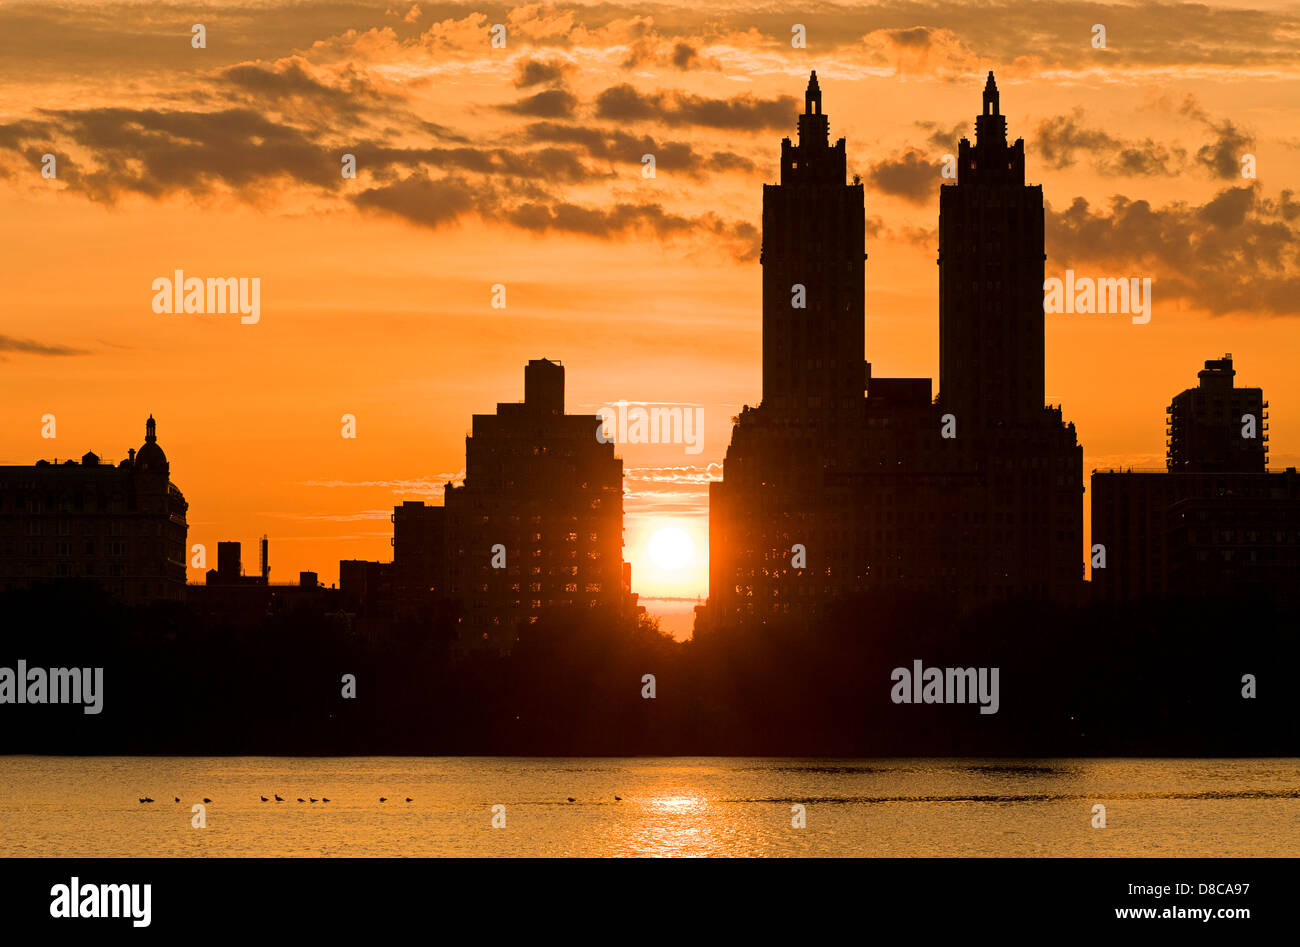 Silhouette de Central Park West et El Dorado Apartment Building, le réservoir, Central Park, Manhattan, New York. Banque D'Images